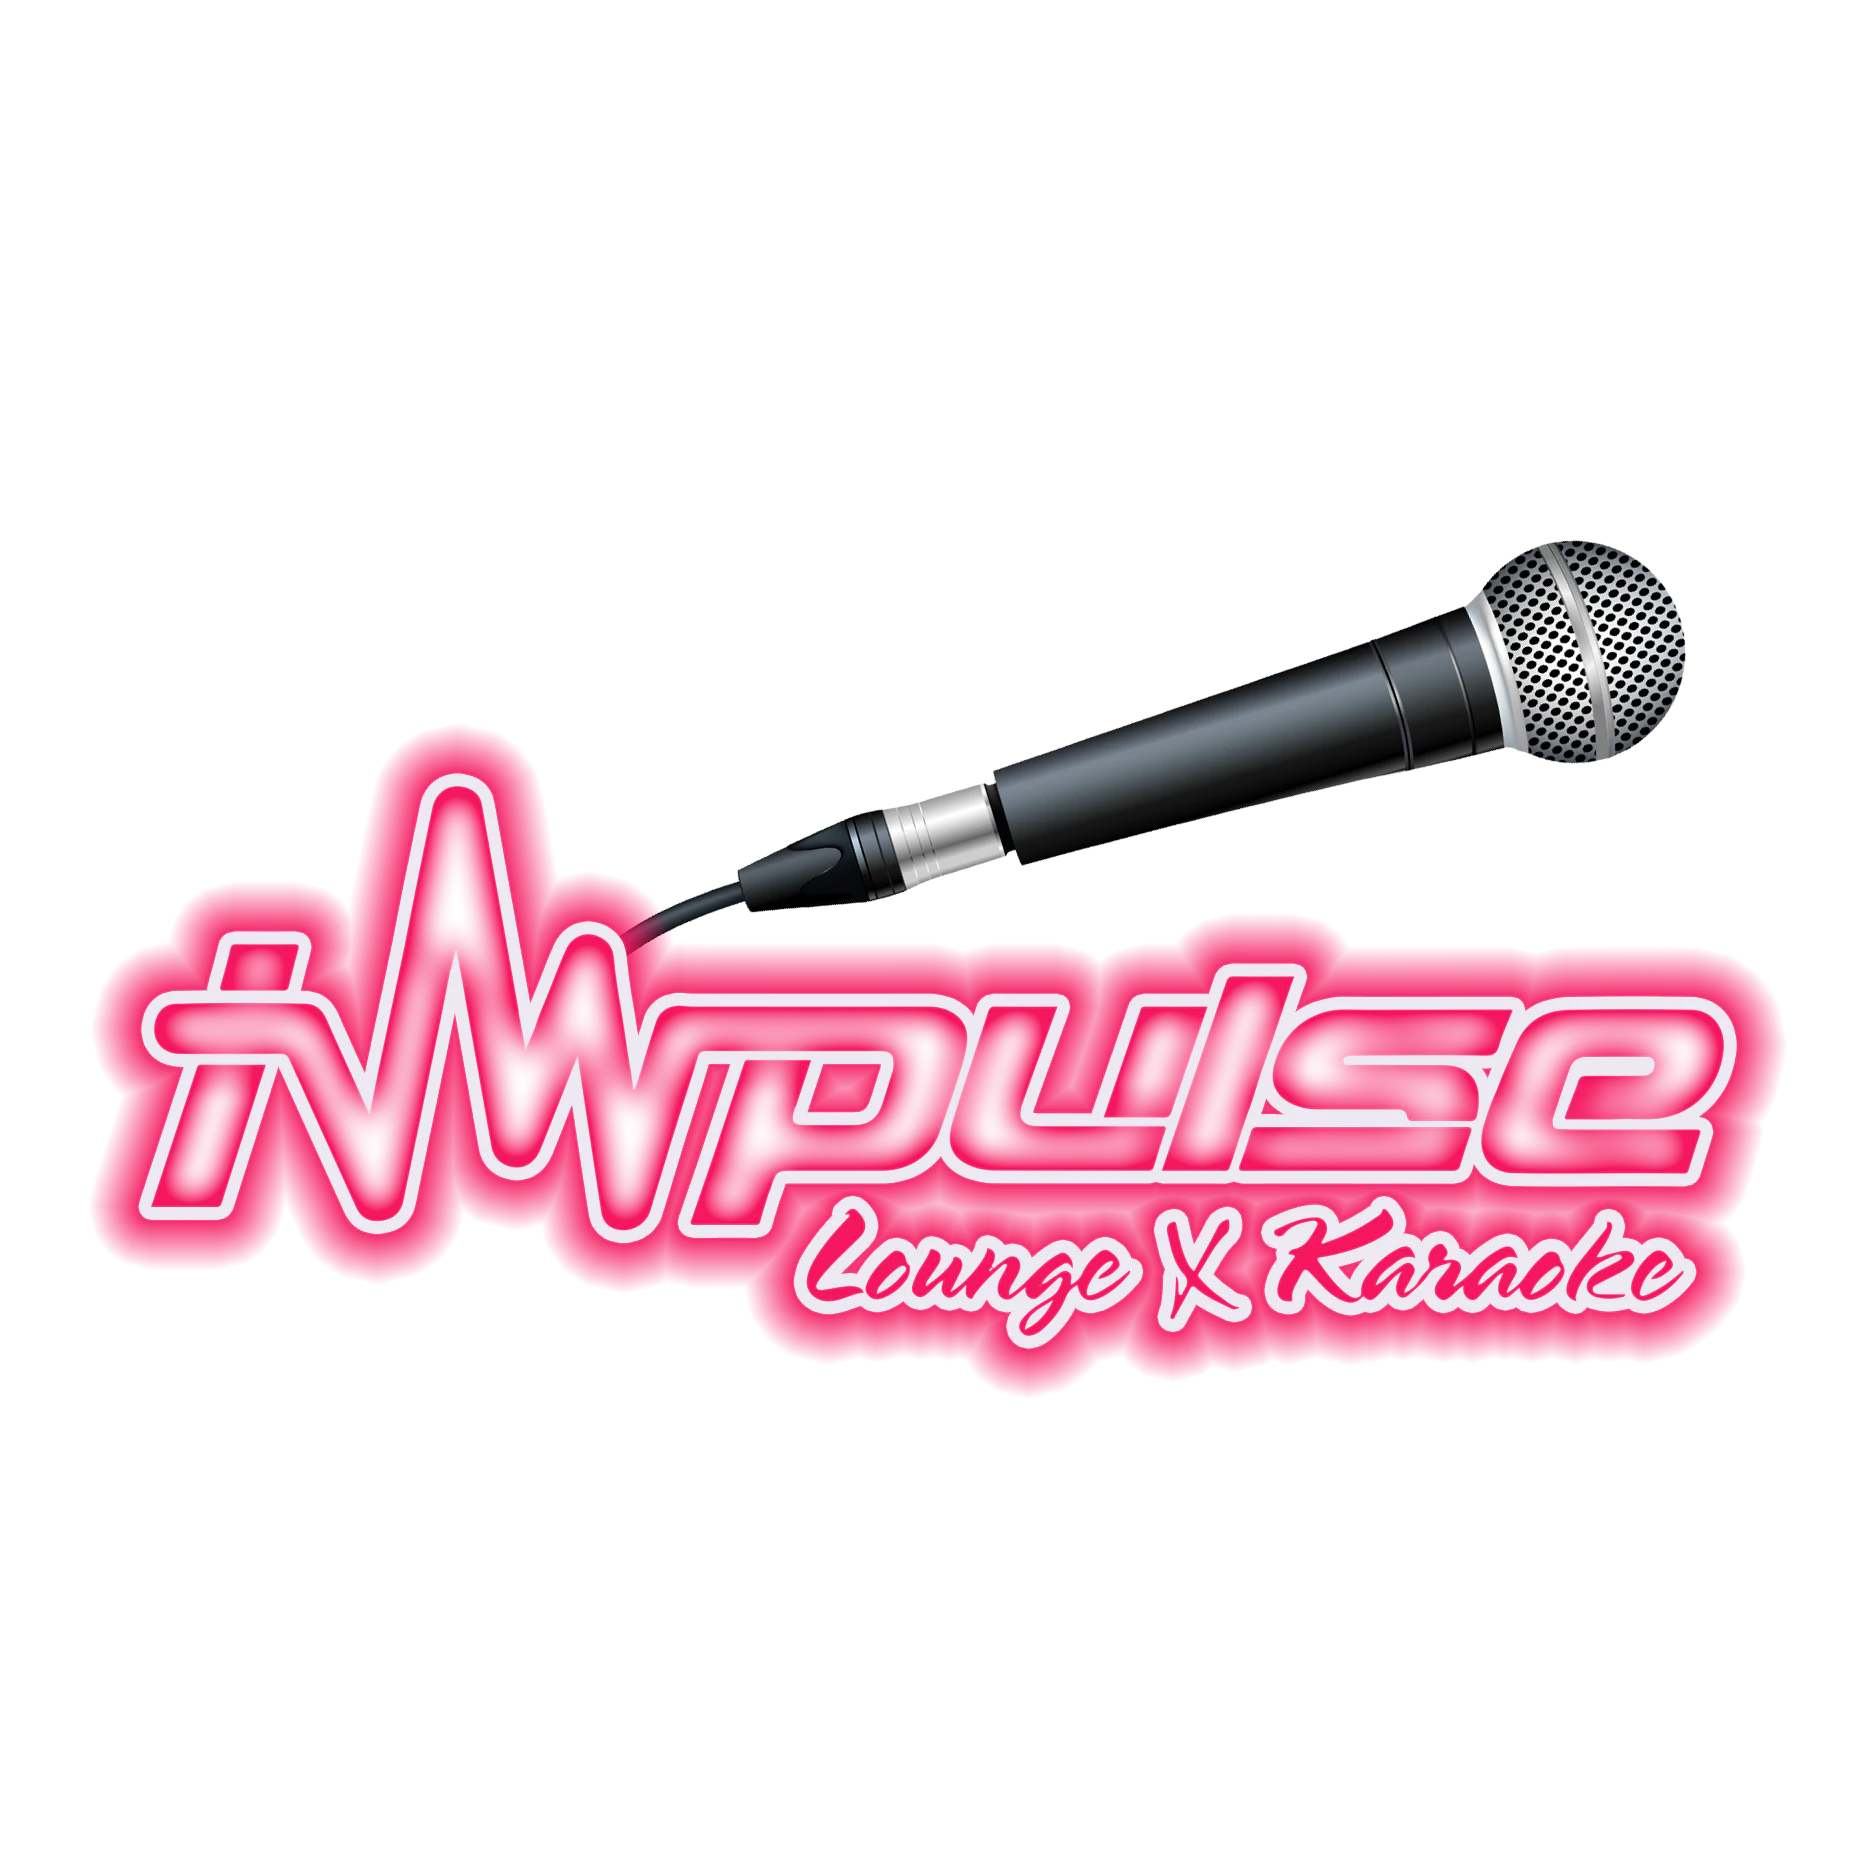 Impulse Lounge & Karaoke